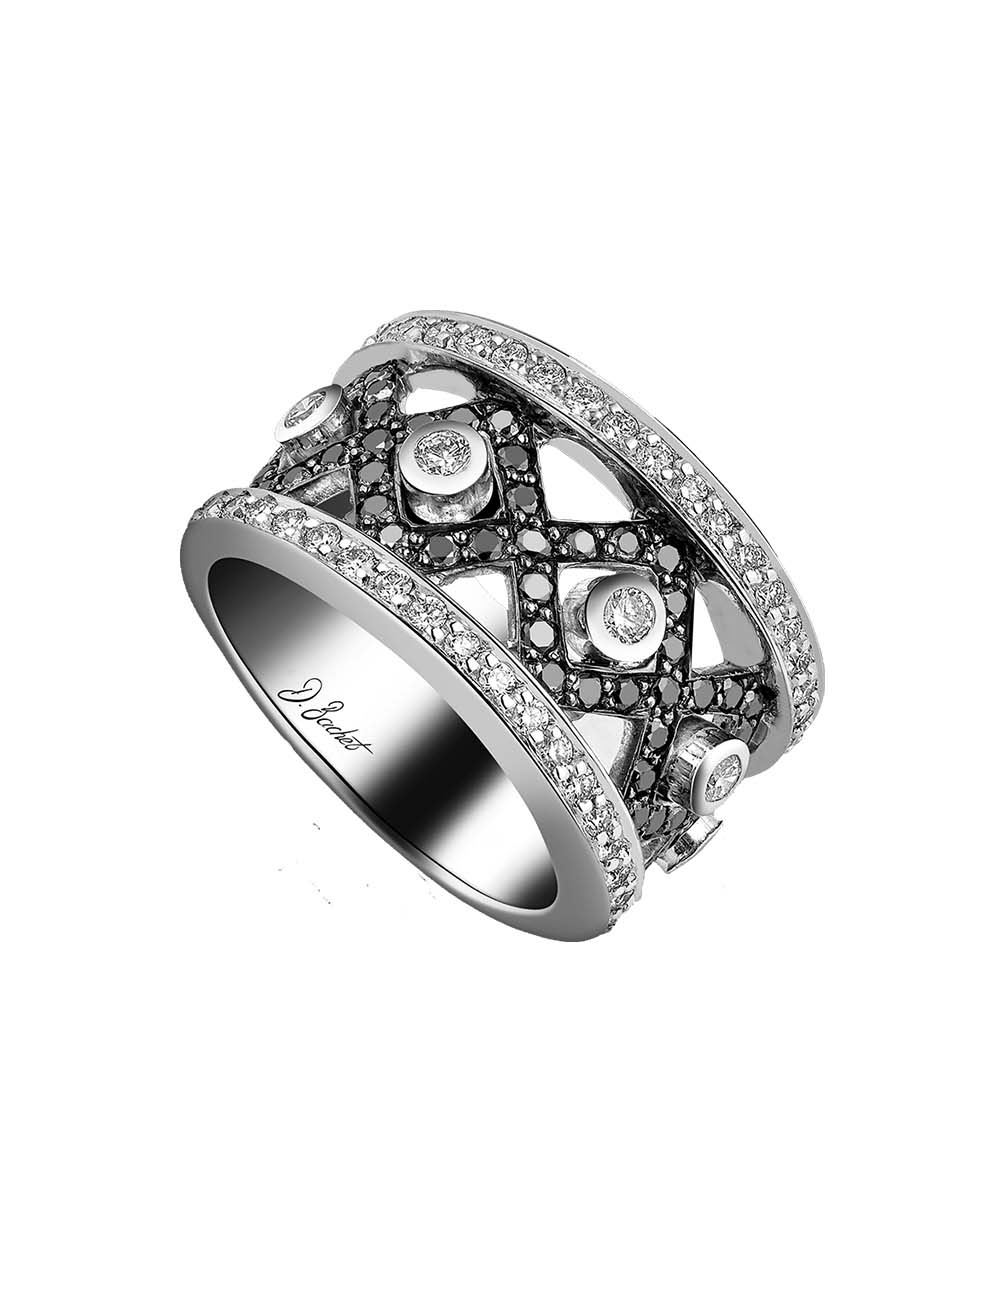 Luxe Masculin Réinventé : Collier Diamants Noirs - D.Bachet Joaillier